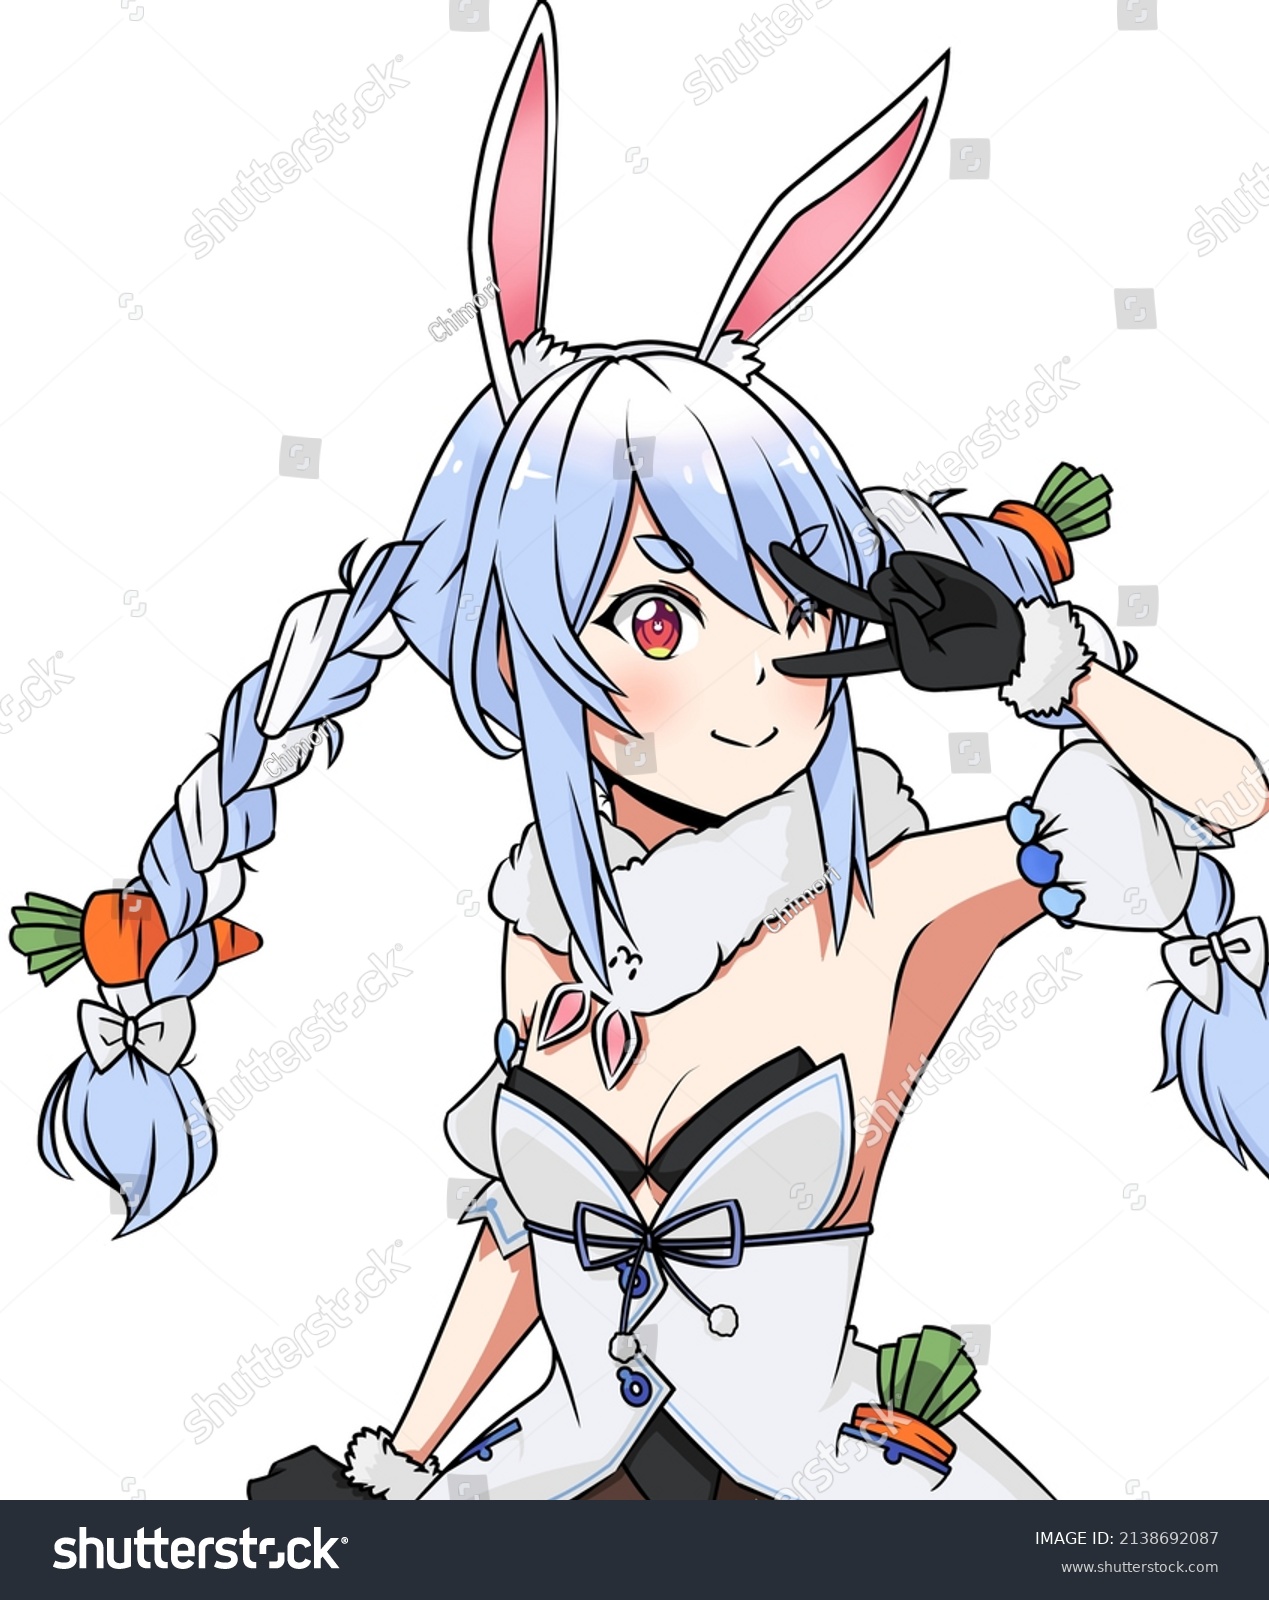 Anime Bunny Girl Posing Illustration Stock Illustration 2138692087